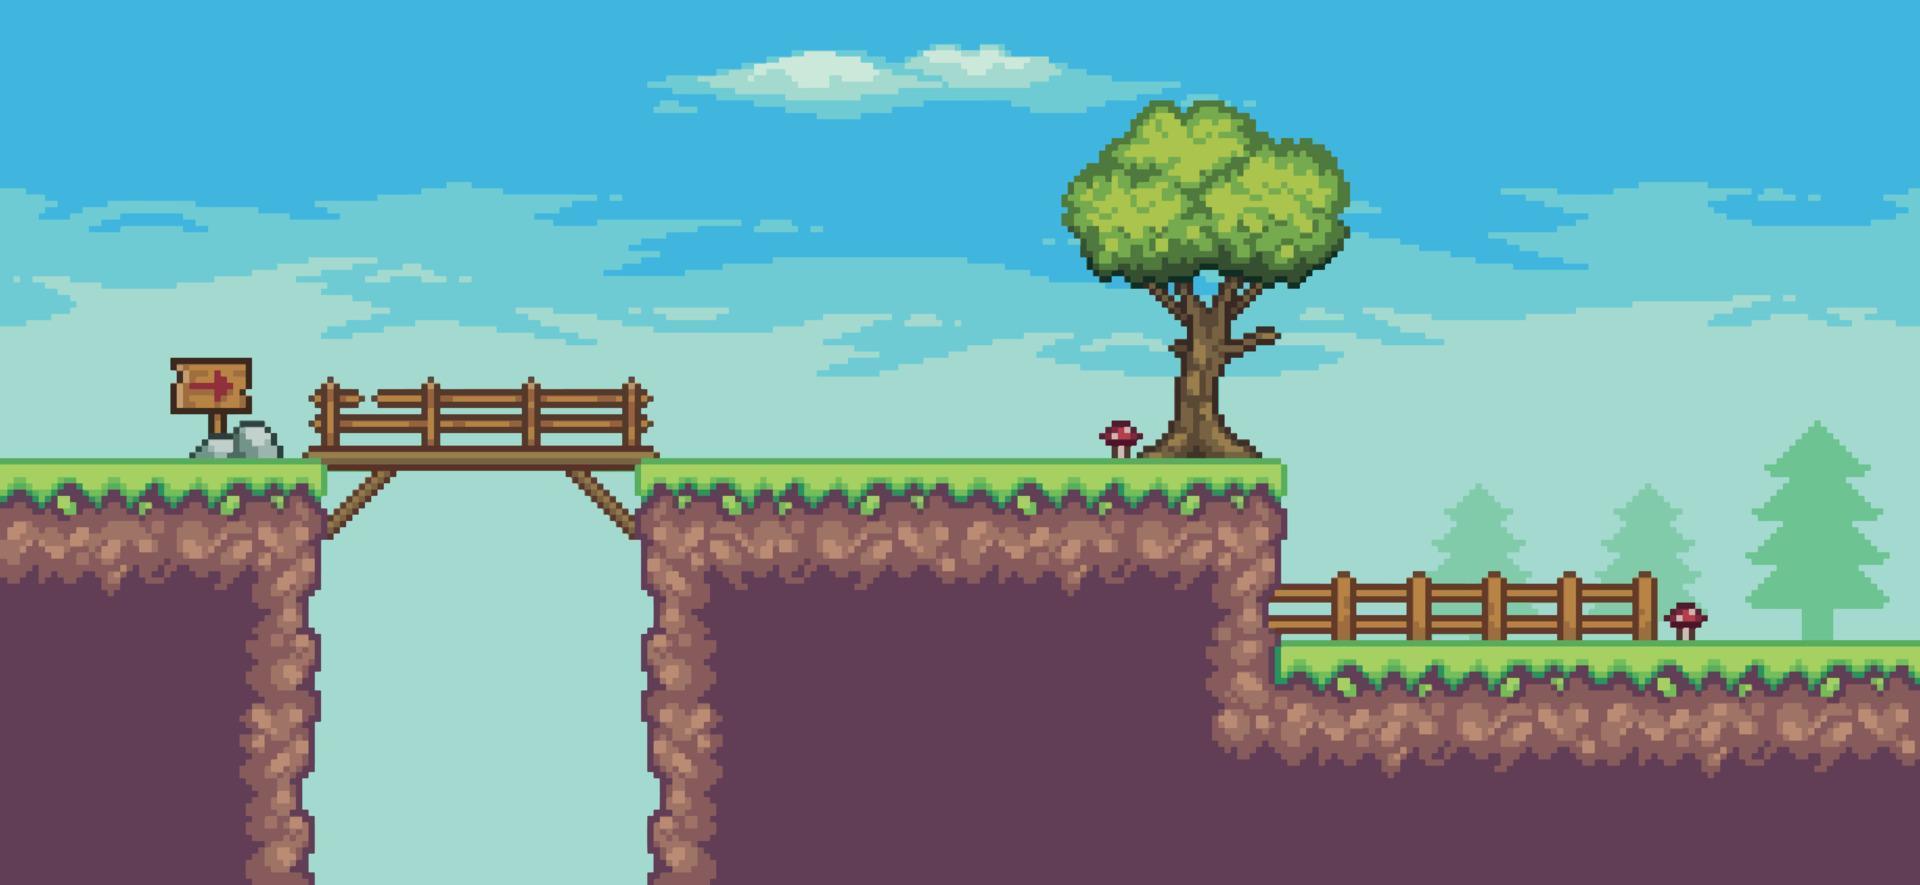 pixelkonst arkadspelscen med träd, bro, staket, träskiva och moln 8 bitars vektorbakgrund vektor